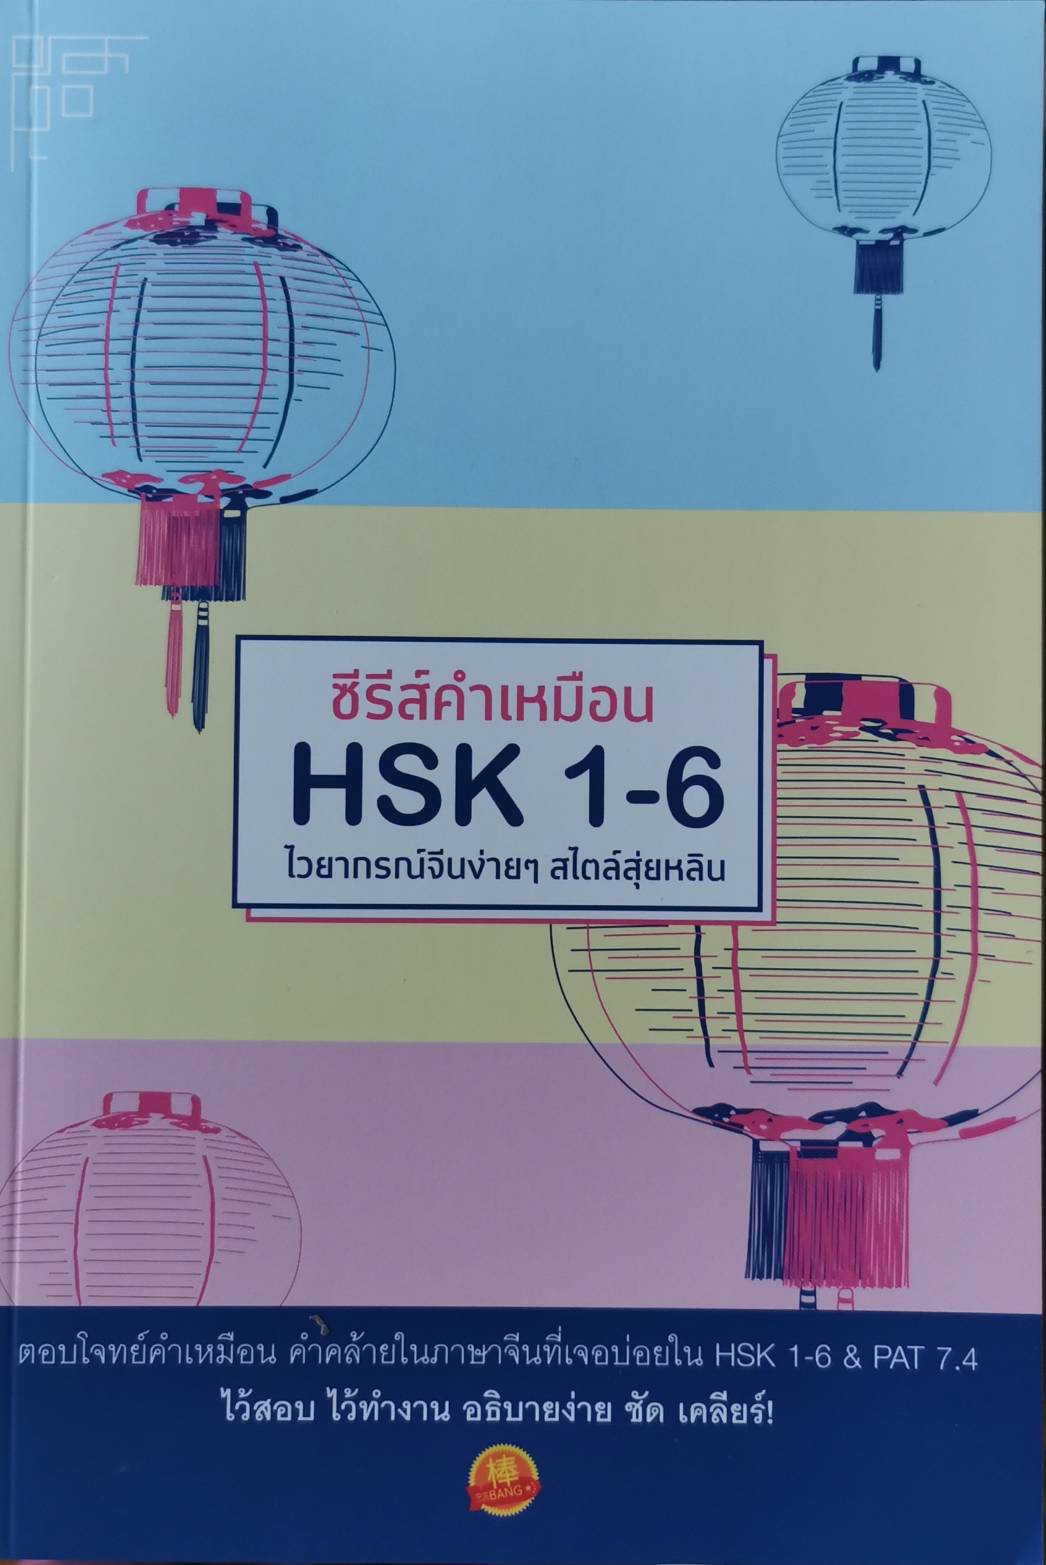 ซีรีส์คำเหมือน HSK 1-6 ไวยากรณ์จีนง่ายๆ สไตล์สุ่ยหลิน หนังสือใหม่